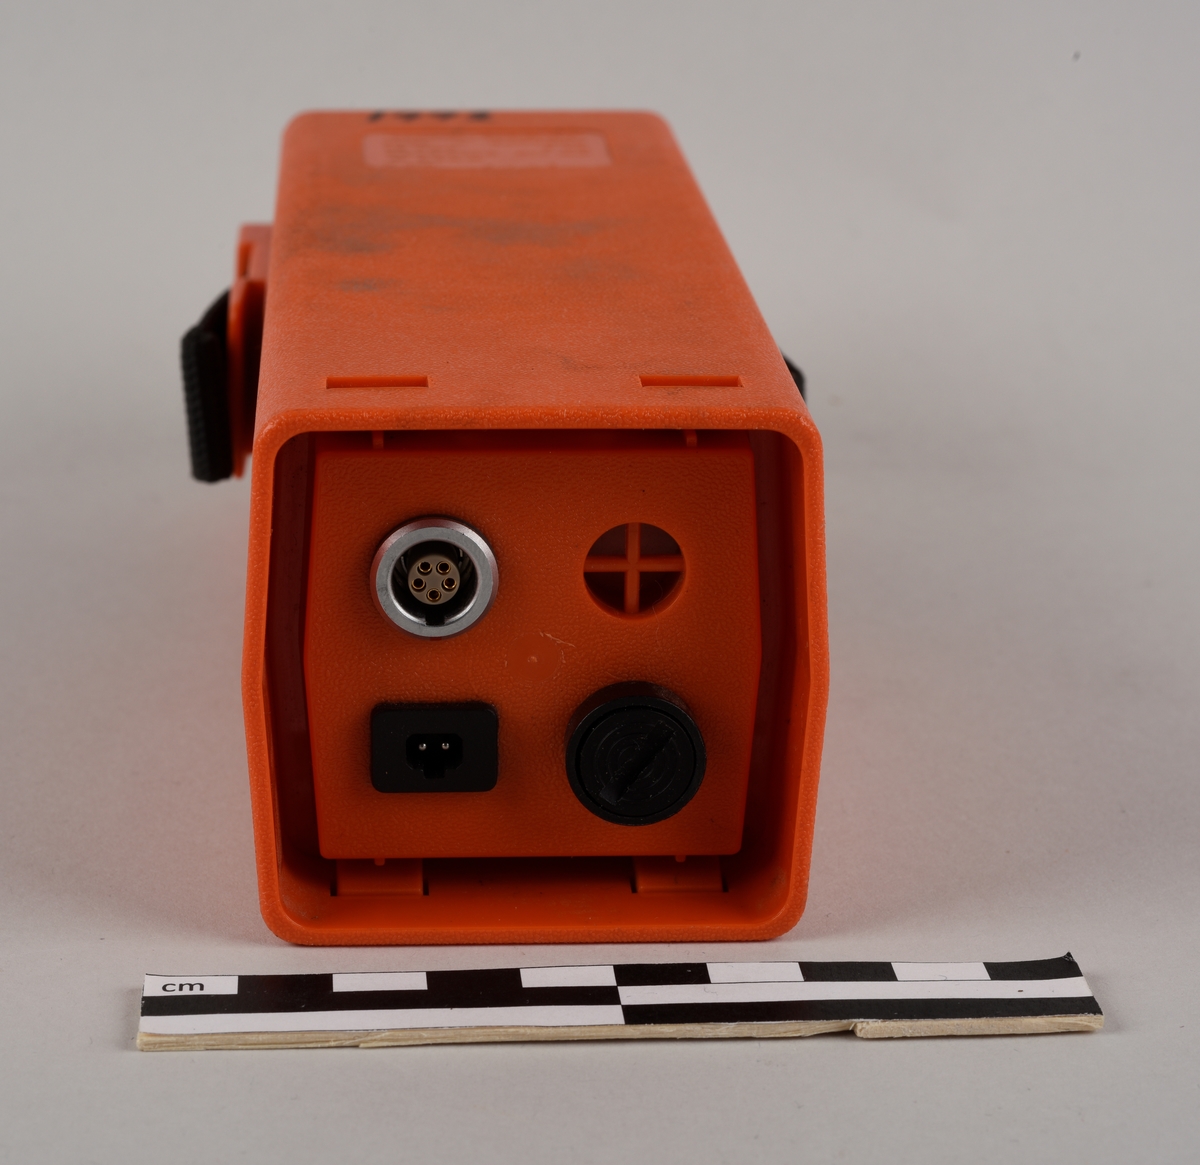 Batteri. En kuststoffbeholder for battericeller. Beholderen har oransje farge og en sort rem. På den ene enden av batterikassen er det en 5-pinns plugg for ladding, en 2-pinns plugg for bruk, et ventilasjonshull og en sikring.
Batterikassen ligger i en hvit oppbevaringsboks av porøst kunststoff (EPS Isopor) med lokk.